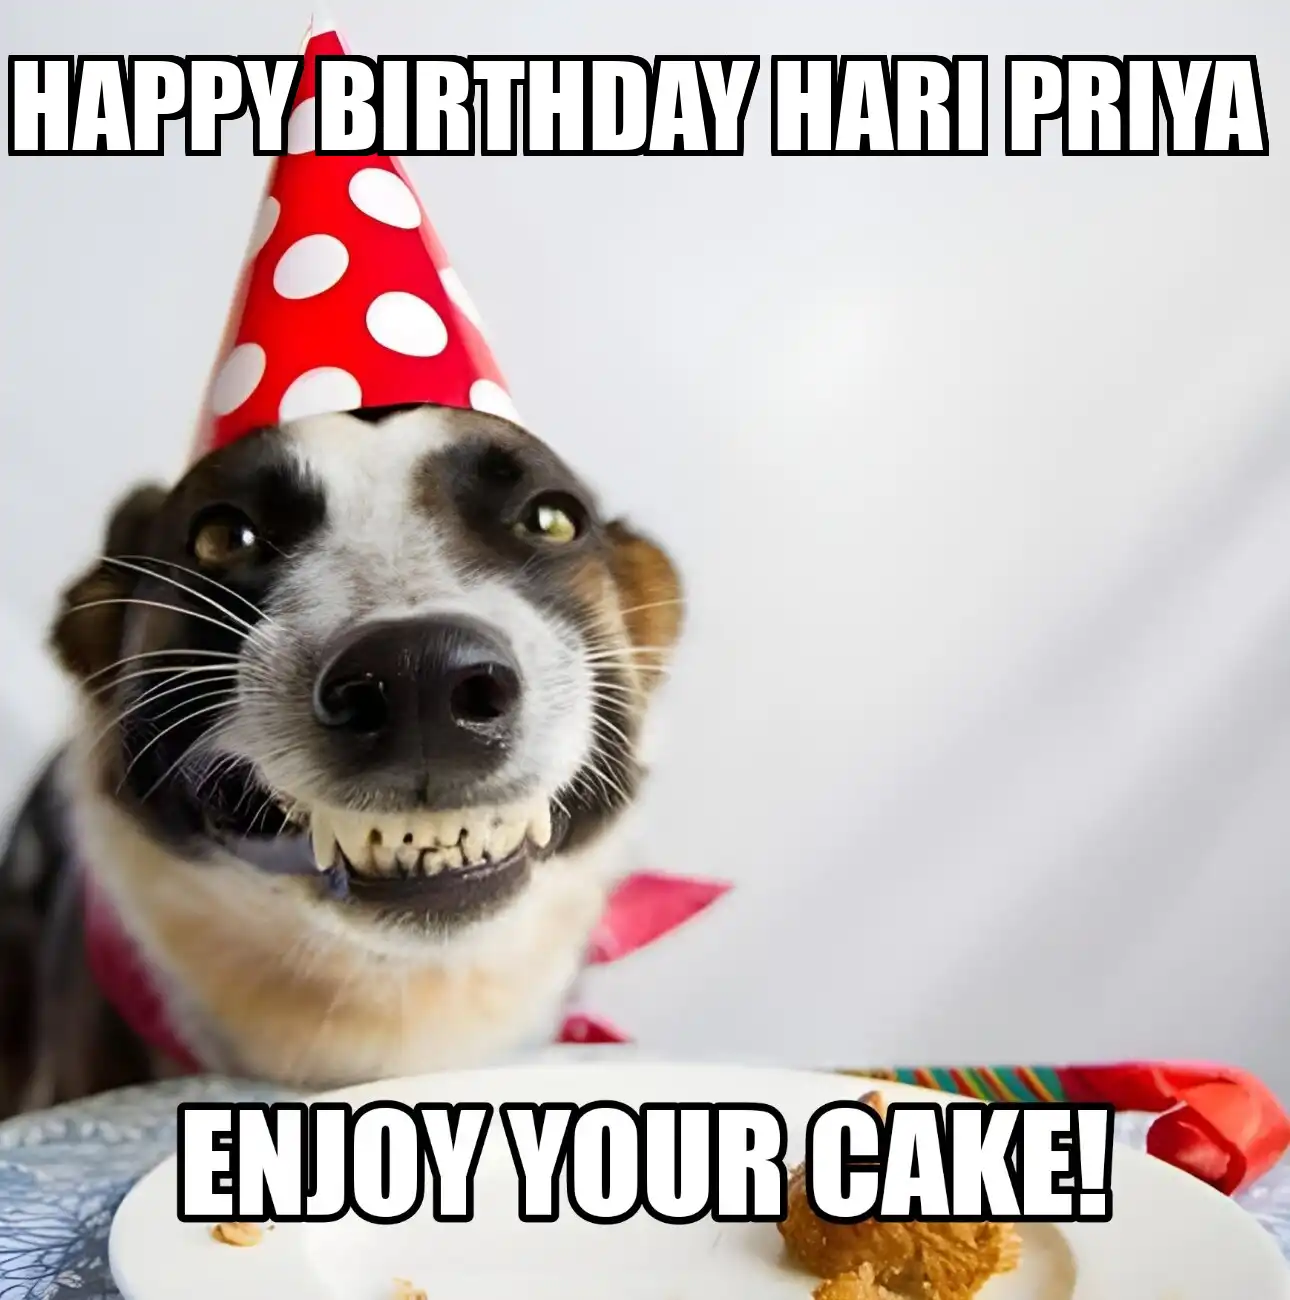 Happy Birthday Hari Priya Enjoy Your Cake Dog Meme